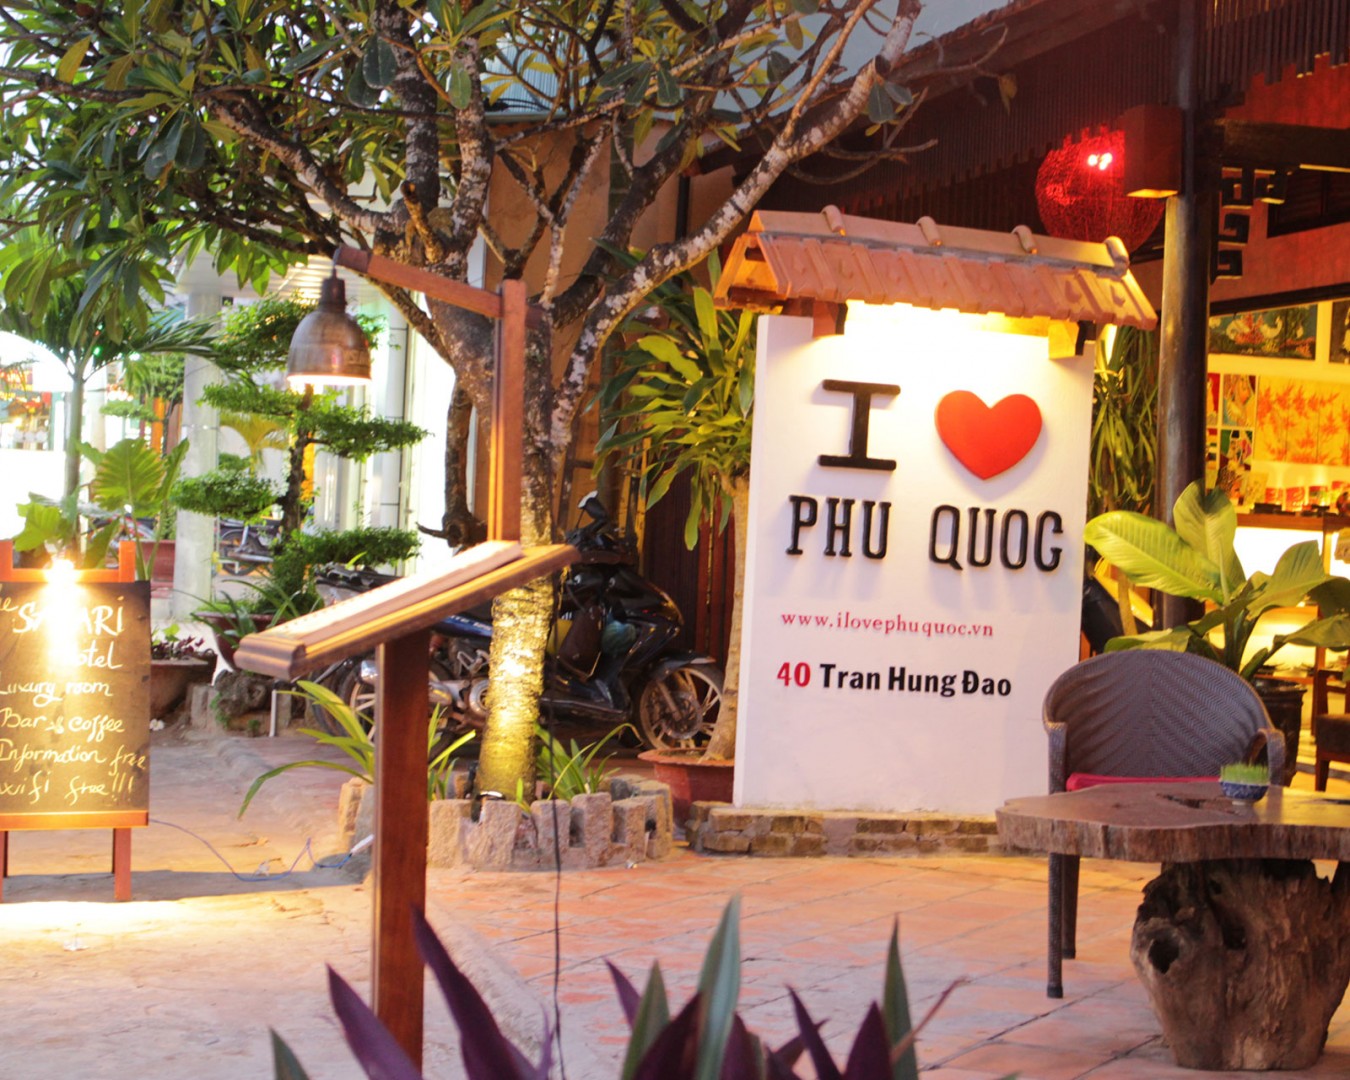 Káº¿t quáº£ hÃ¬nh áº£nh cho QuÃ¡n I love Phu Quoc